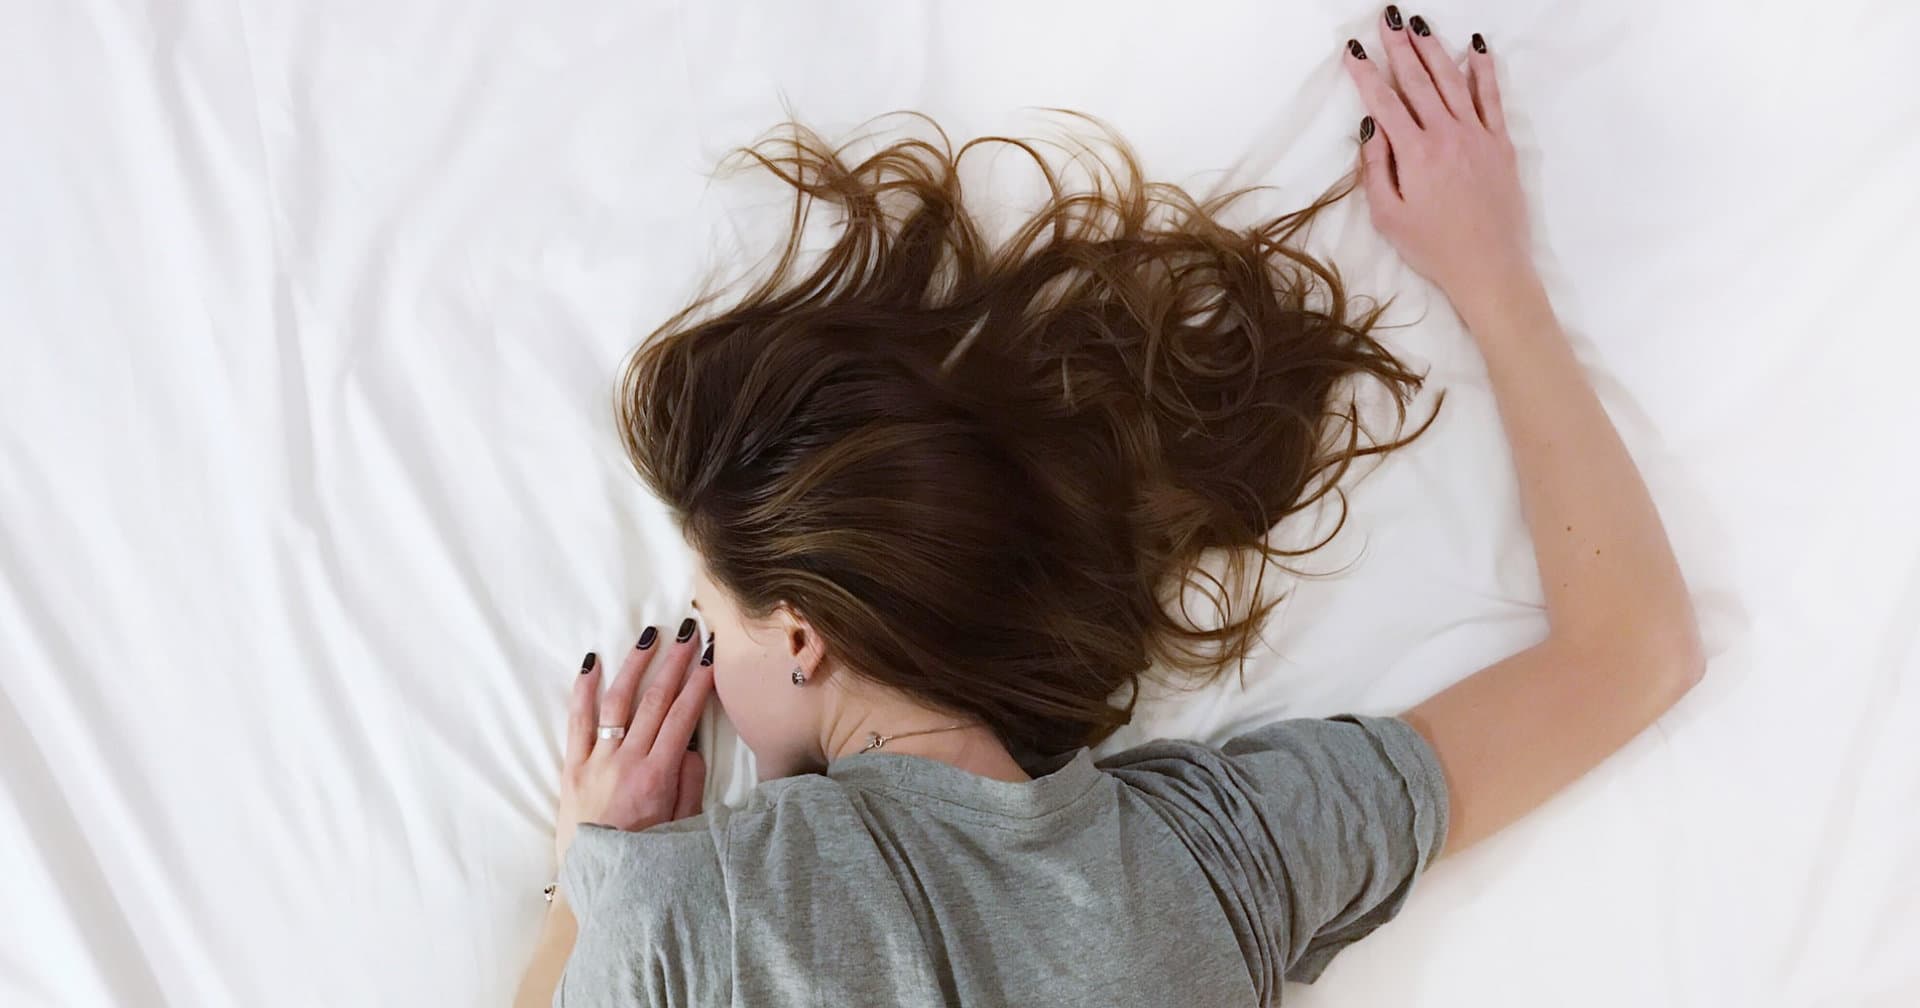 Is It Bad to Sleep With Wet Hair? - Boilerhouse Hair